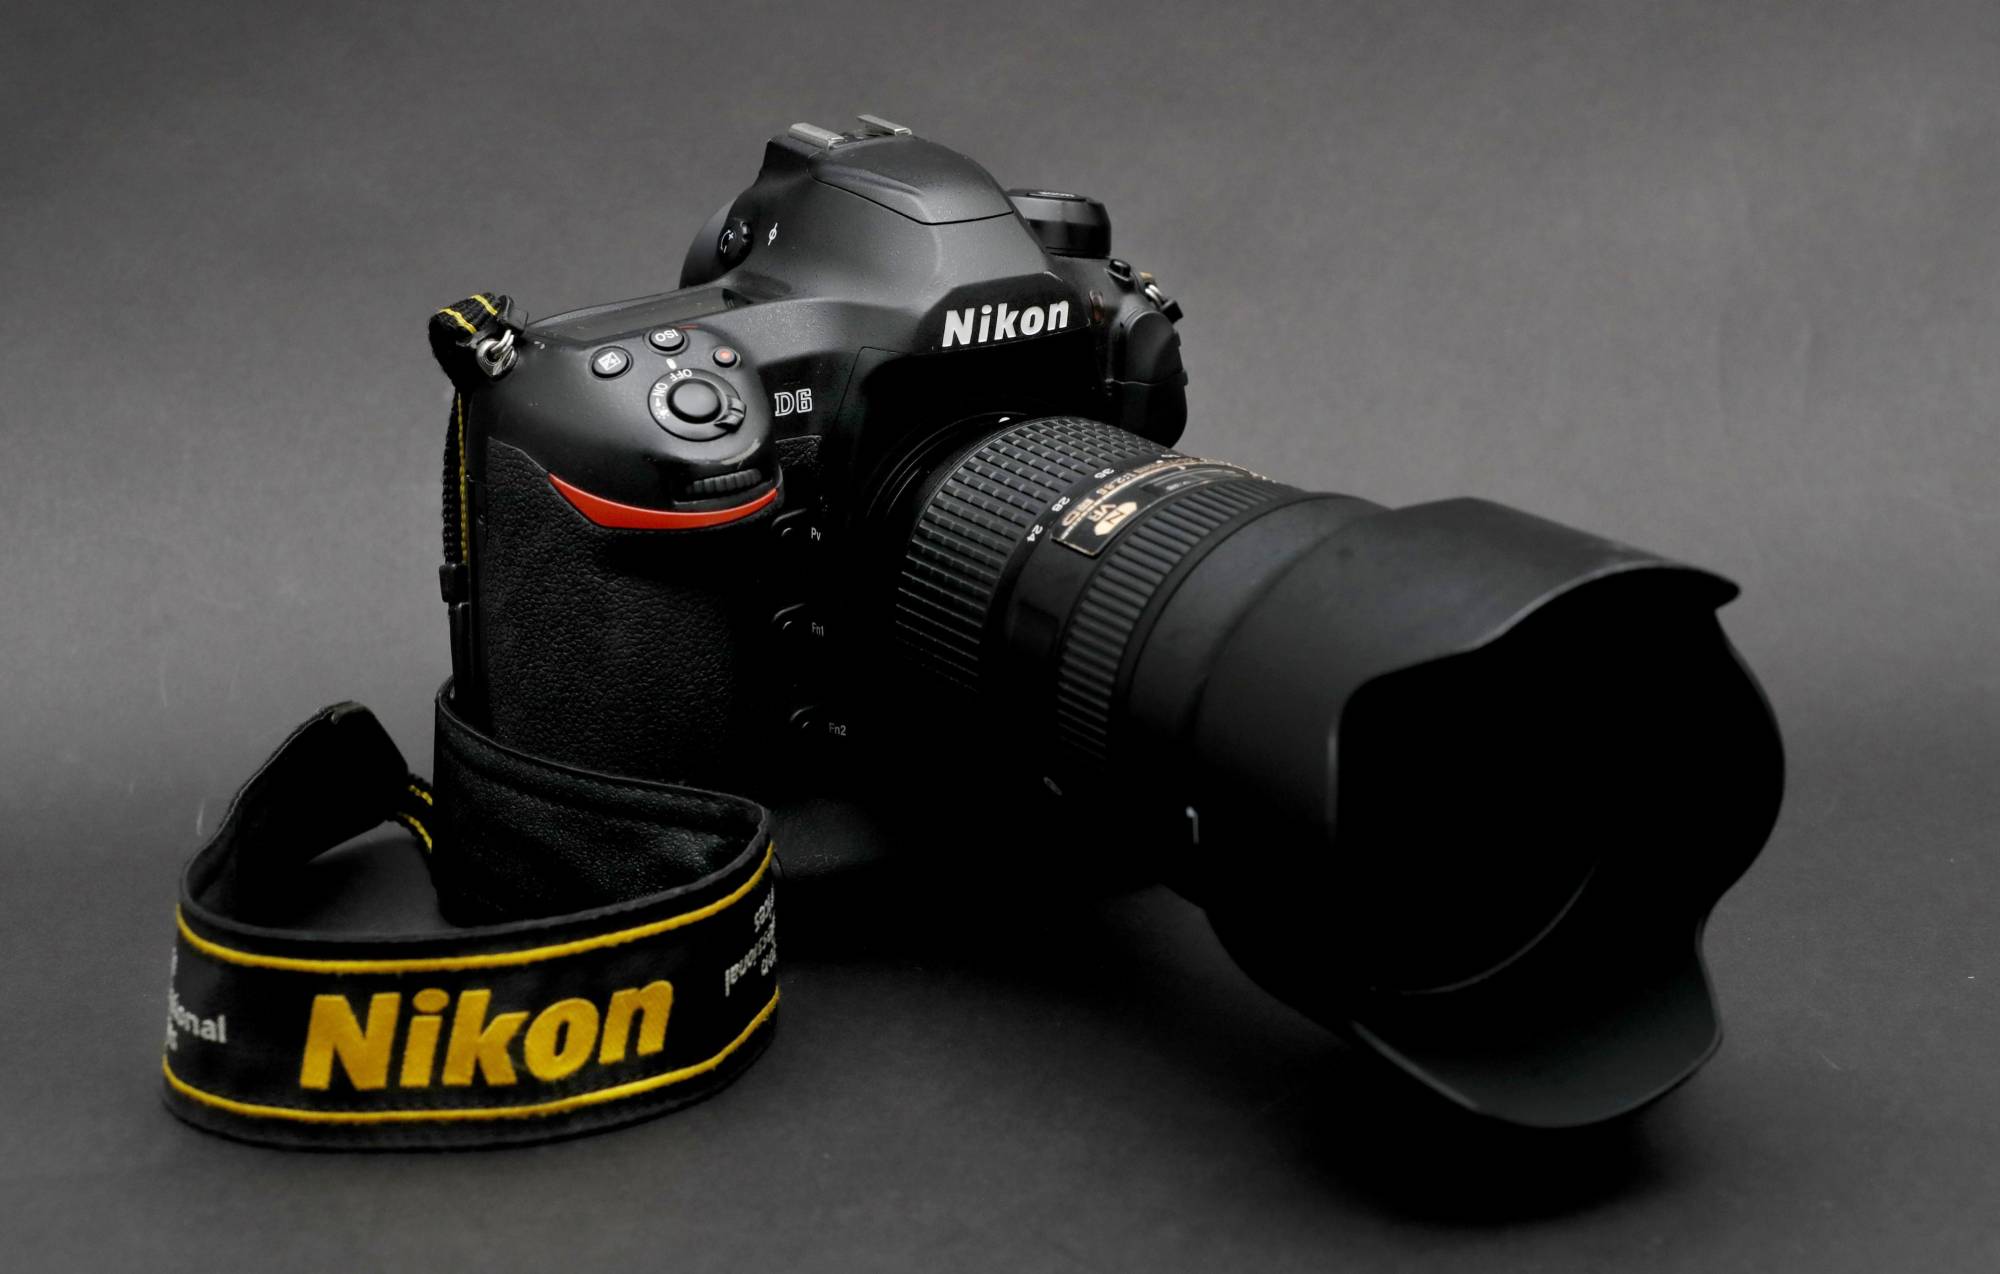 Nikon Camera Black Friday Deals